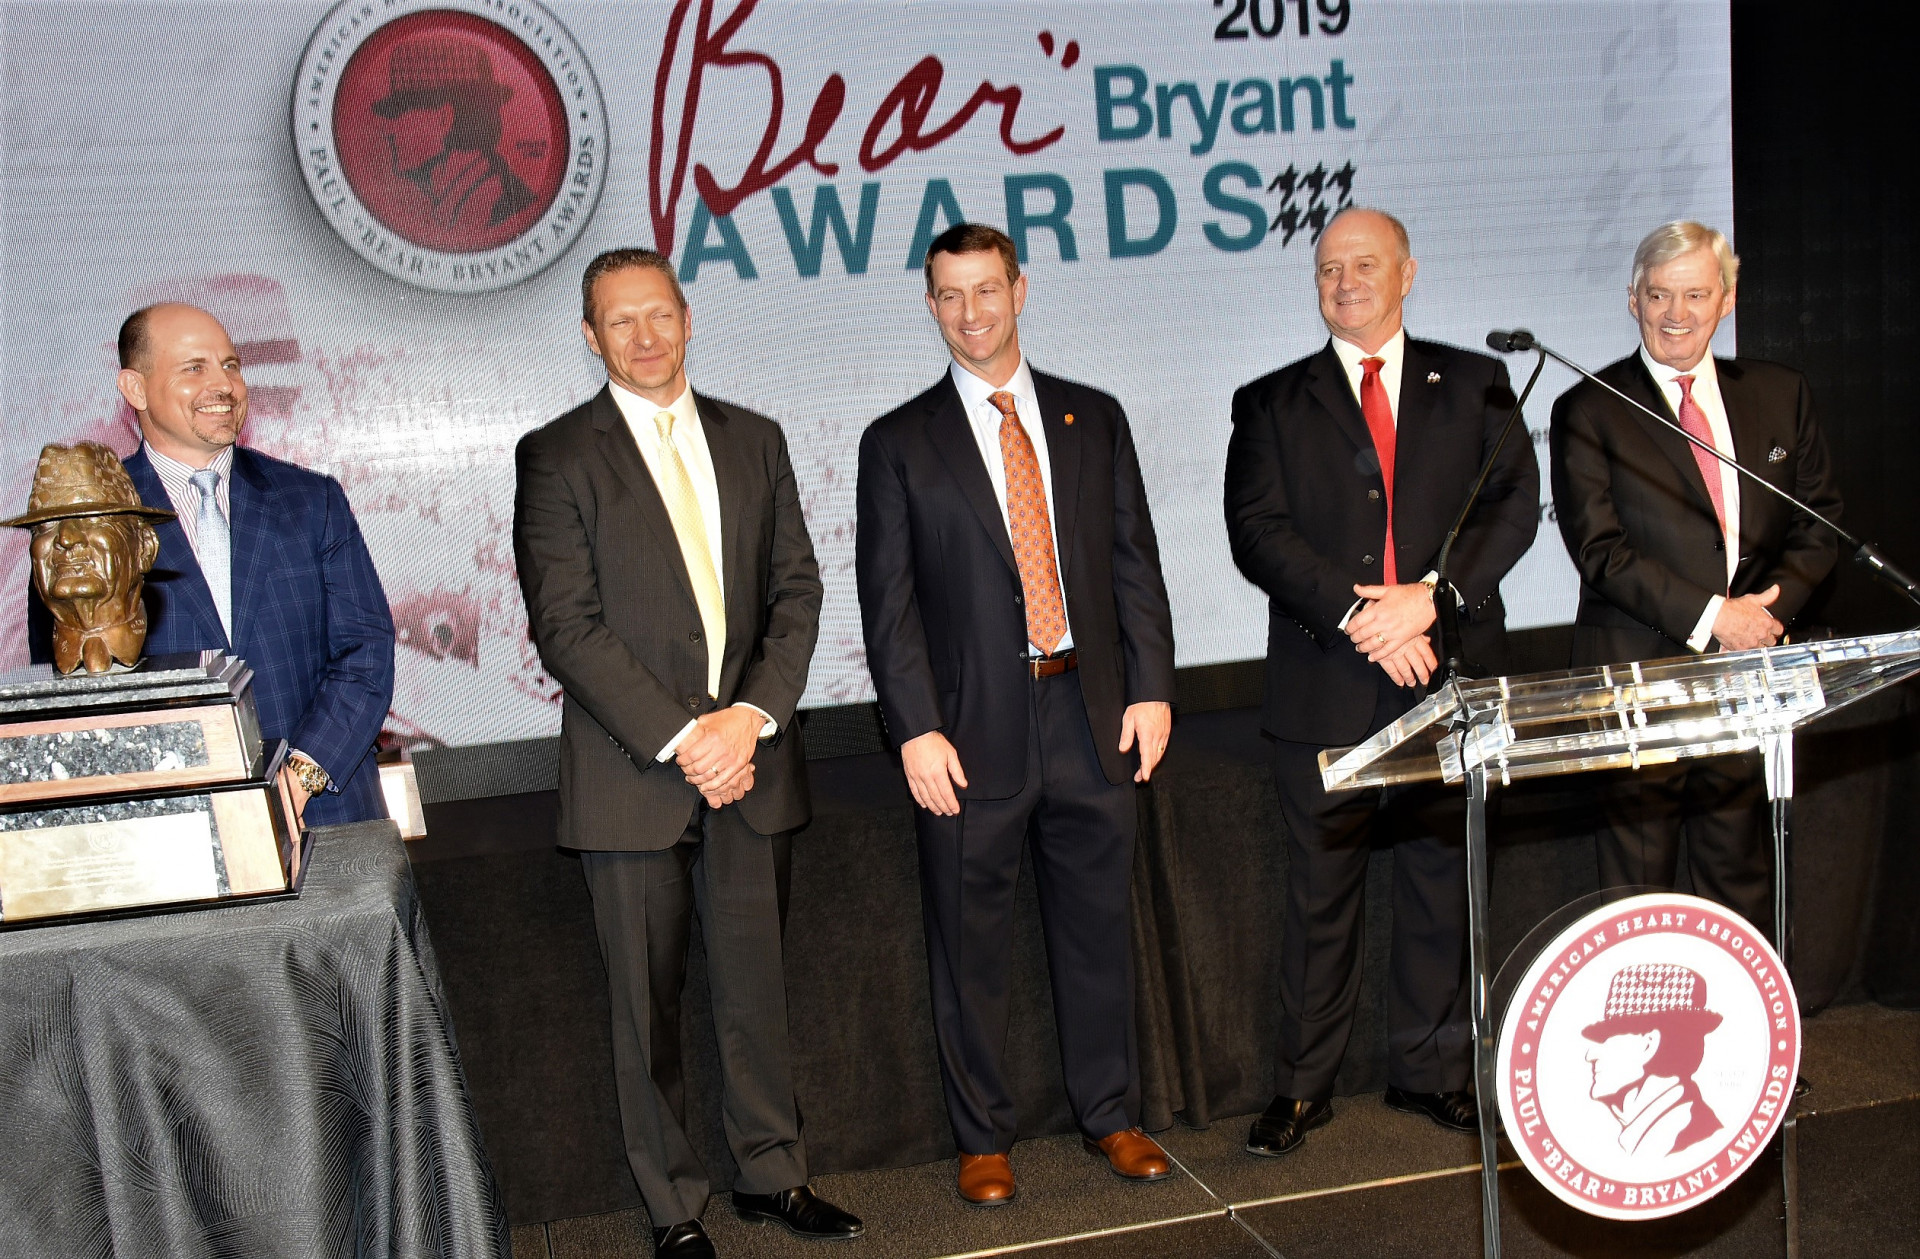 Bryant Award finalists (from left), Bill Clark, Jeff Monken, Dabo Swinney, Jeff Tedford, along with Lifetime Achievement Award winner Frank Beamer